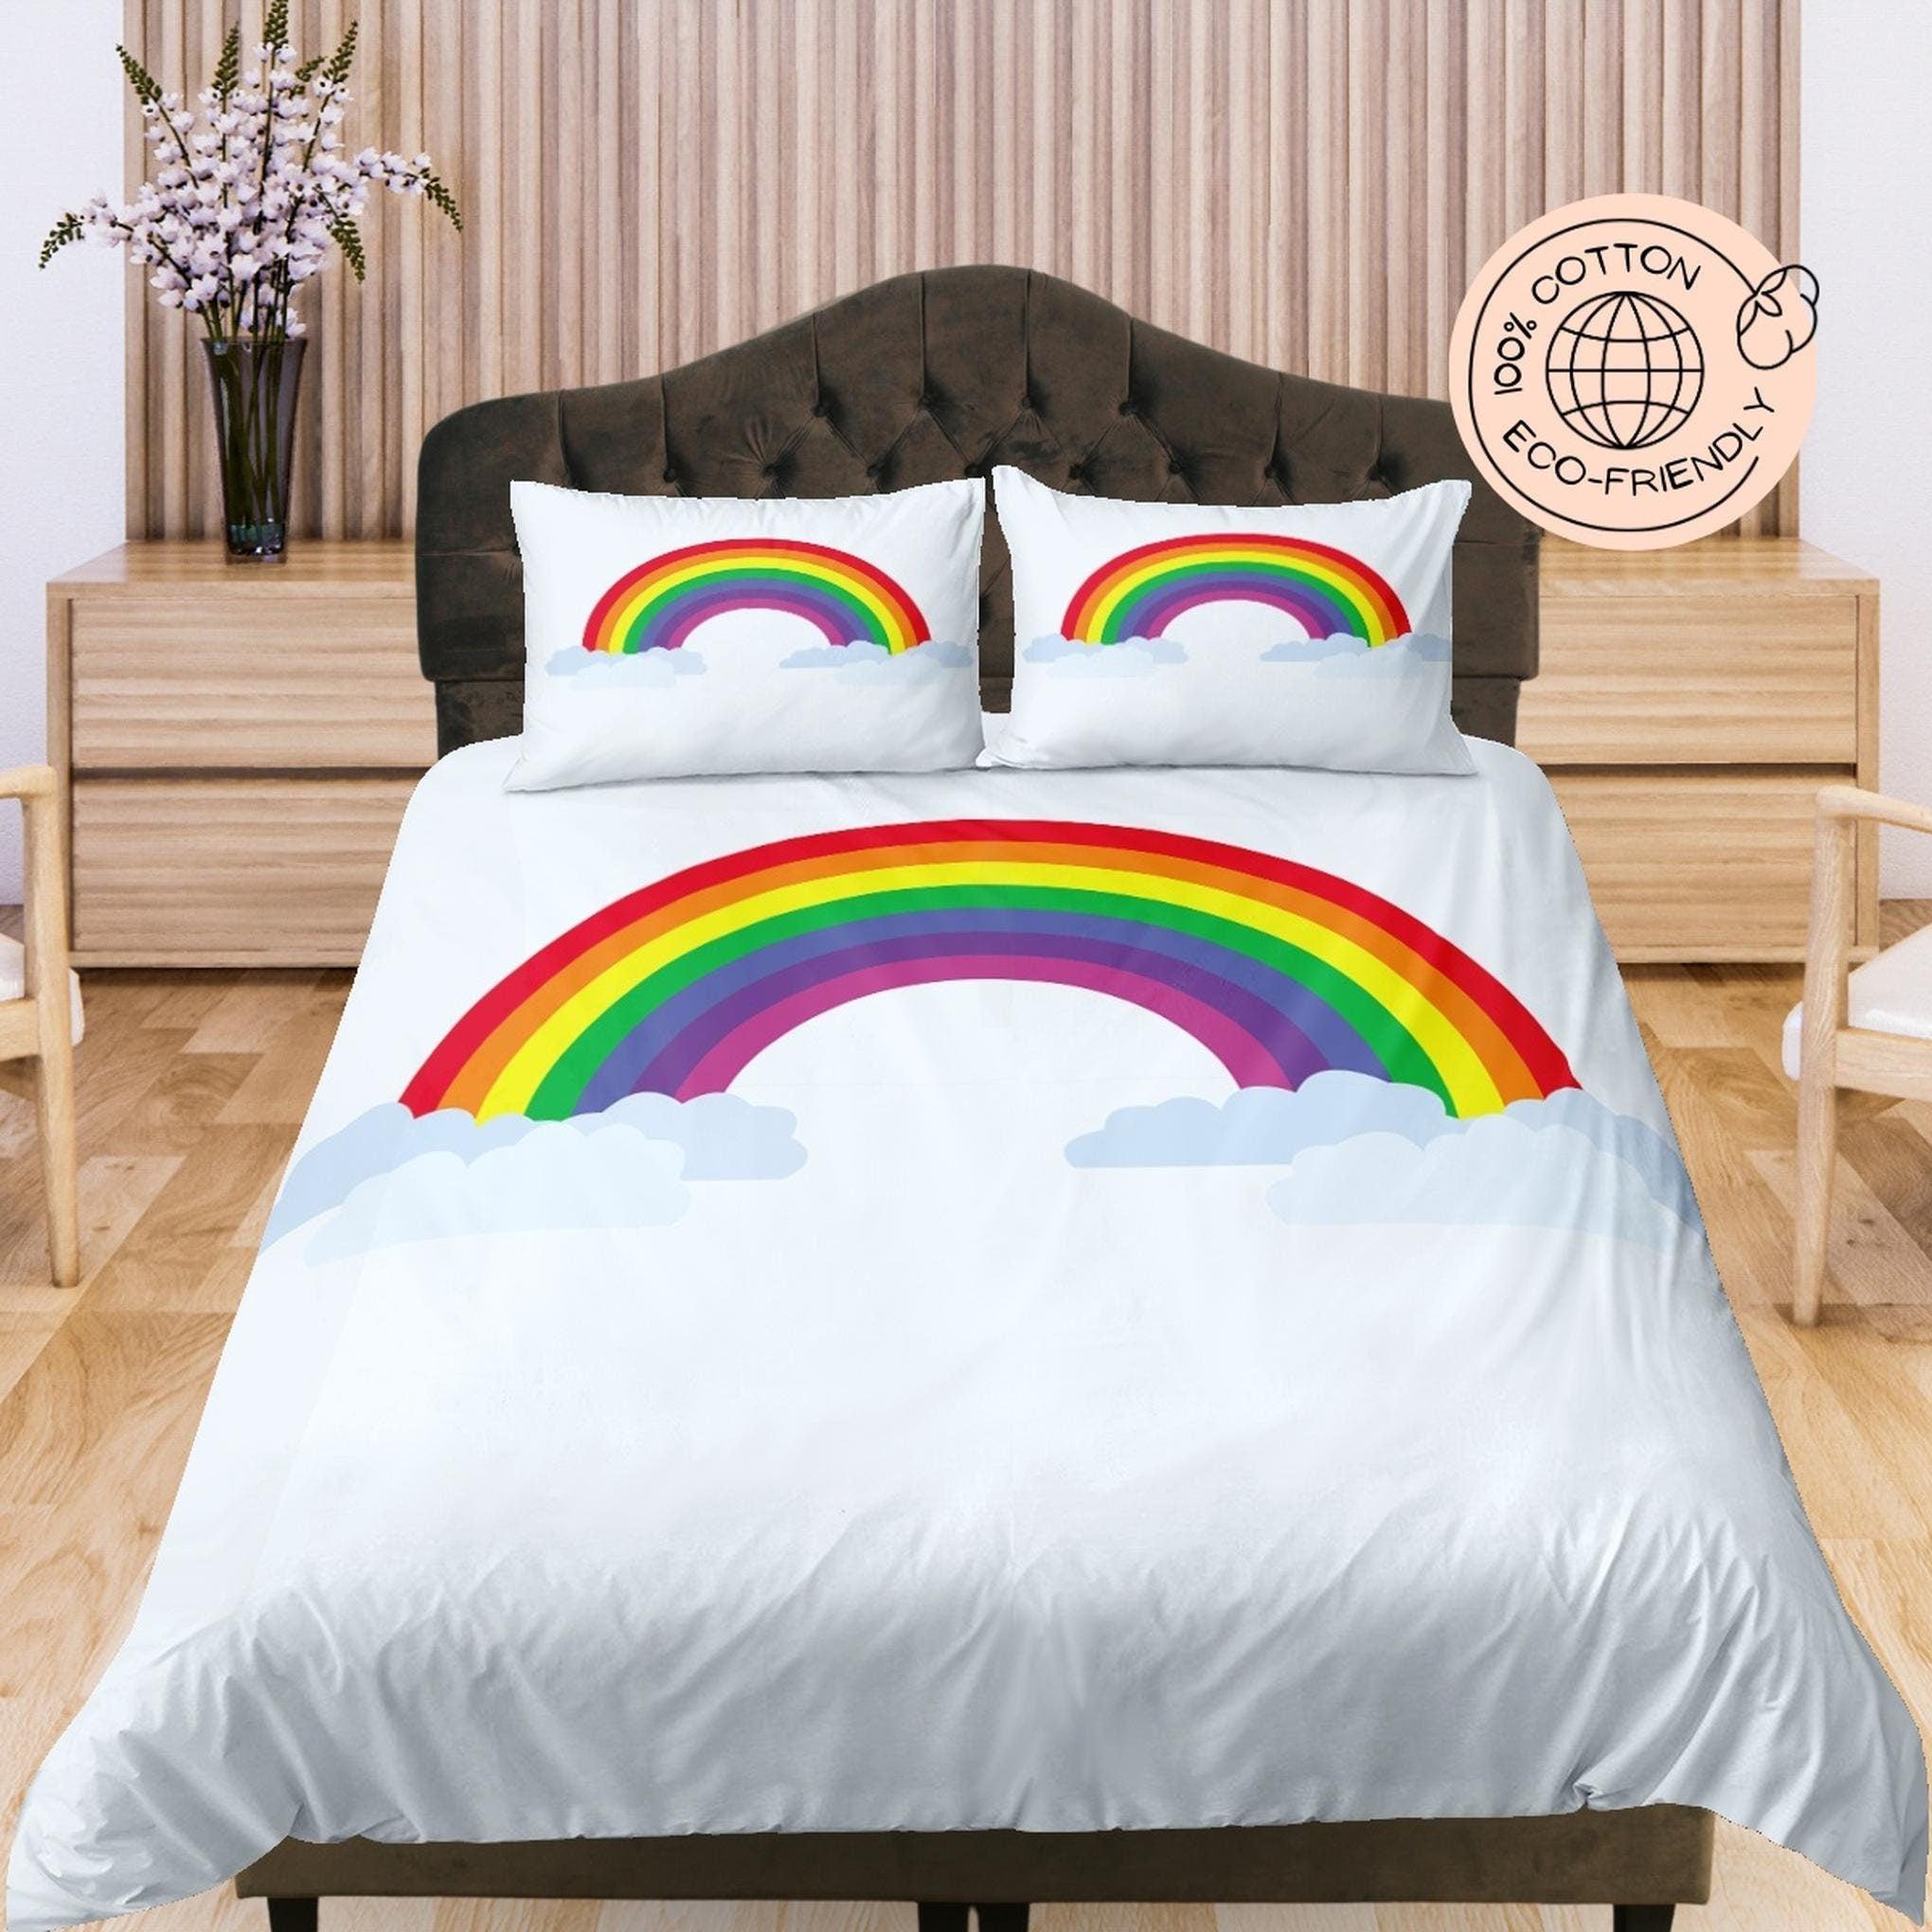 daintyduvet Rainbow in Sky Cotton White Duvet Cover Set for Kids, Toddler Bedding, Baby Zipper Bedding, Nursery Cotton Bedding, Crib Blanket, Unisex